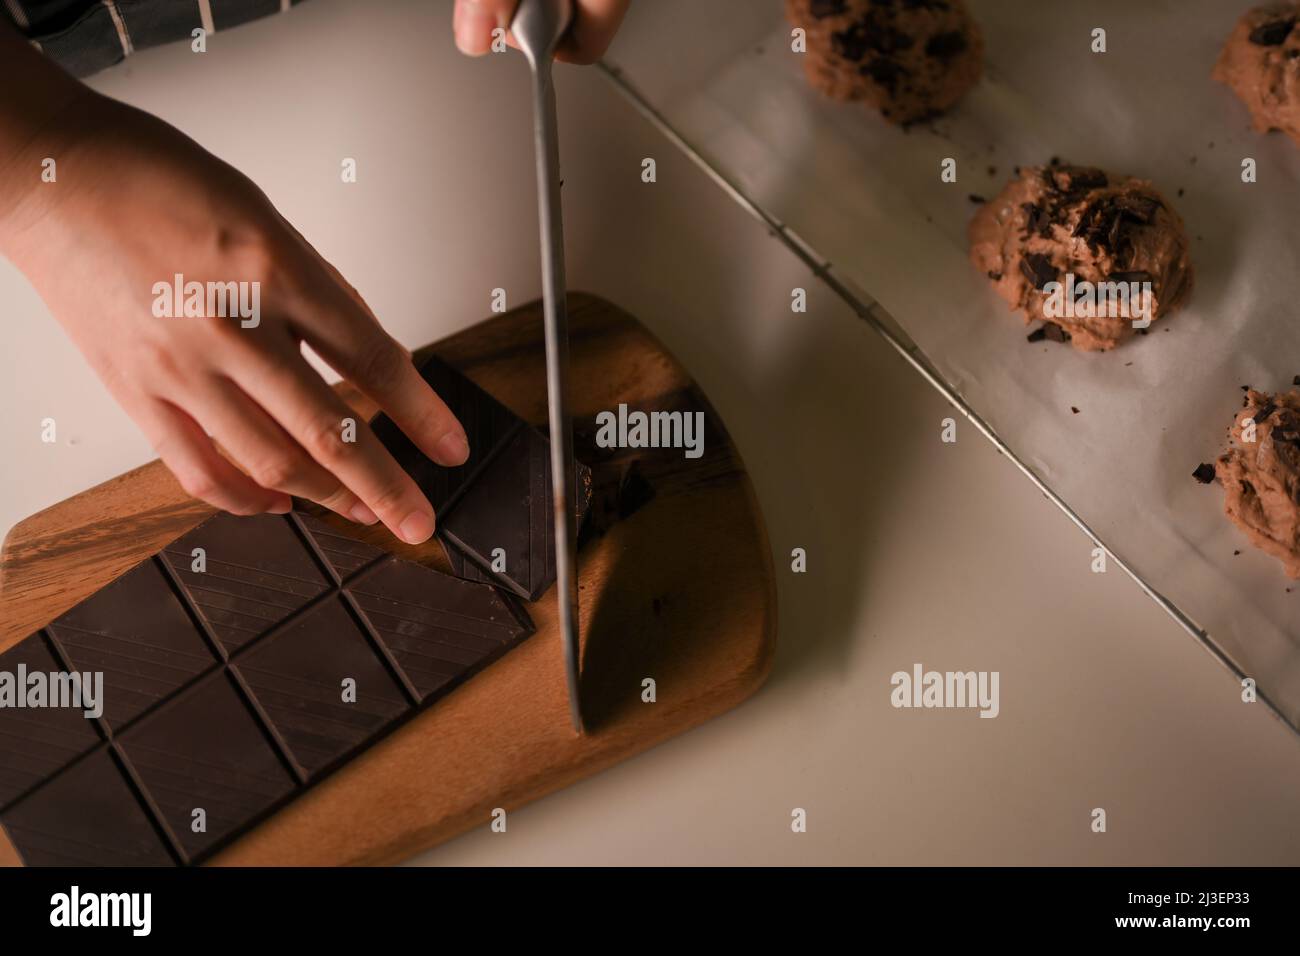 Draufsicht, weibliche Hände mit einem Messer schneiden eine Schokolade Bars auf einem Holz Schneidebrett, die Vorbereitung der Zutaten für das Backen von Schokolade Cookies. Stockfoto